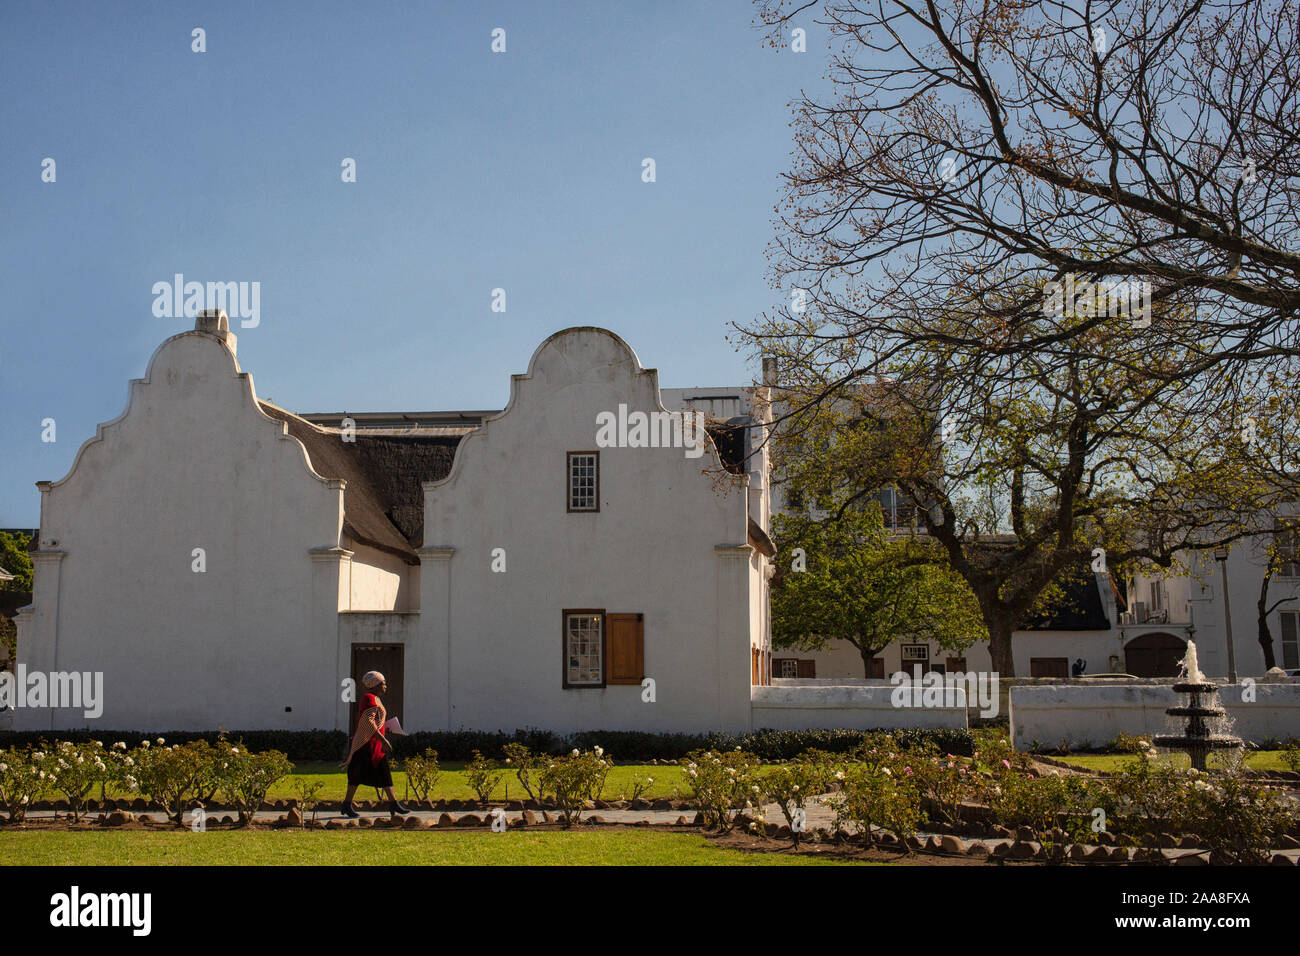 Dans l'architecture des maisons de style Cape Dutch à Stellenbosch, Afrique du Sud Banque D'Images